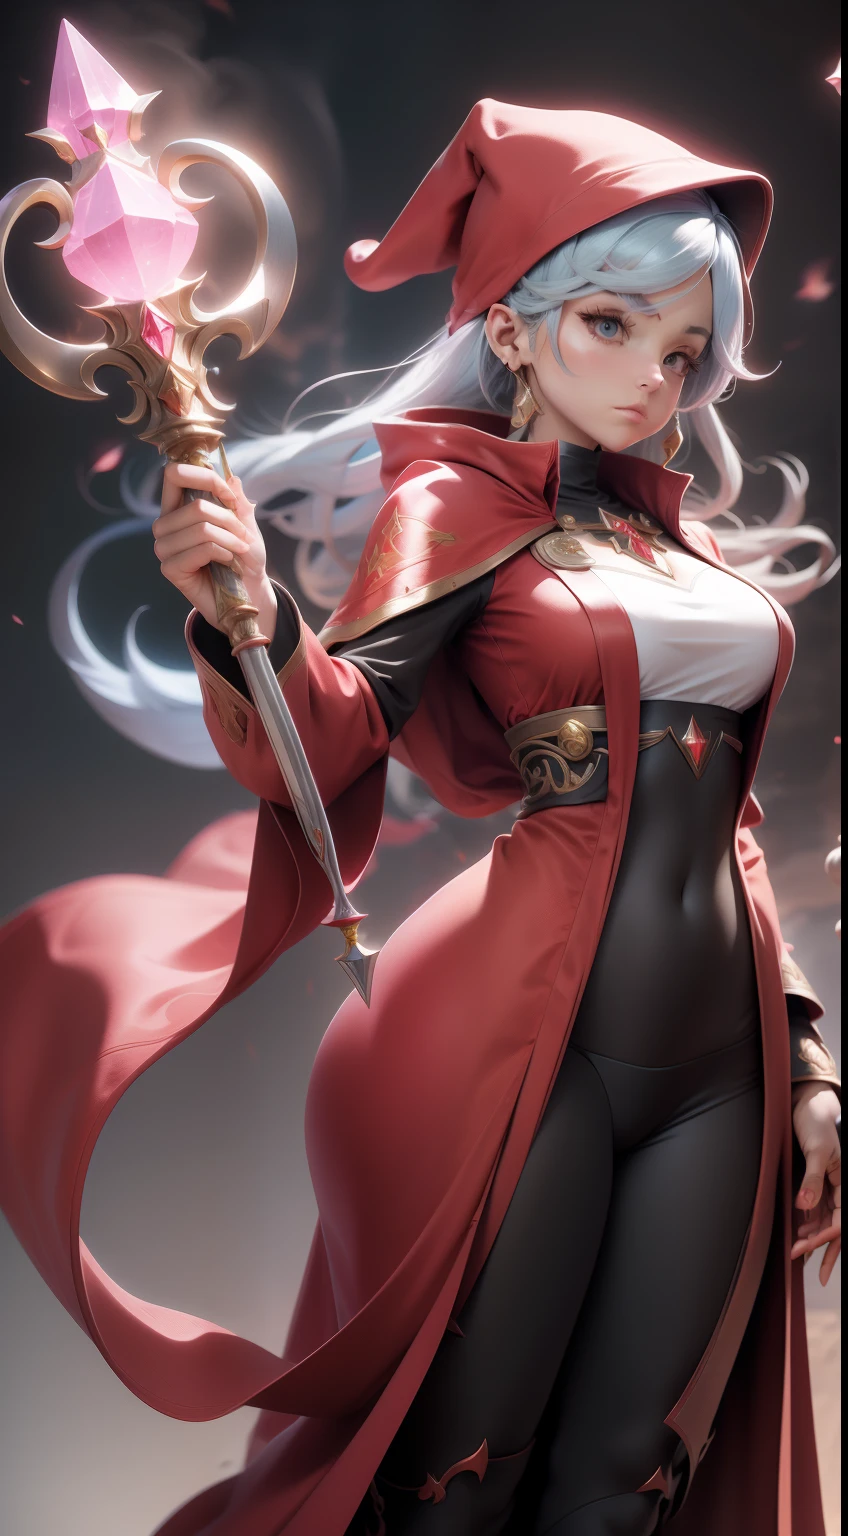 身穿红色法师长袍的女性角色, 多种姿势, 正面和背面细节, 长晶石法杖